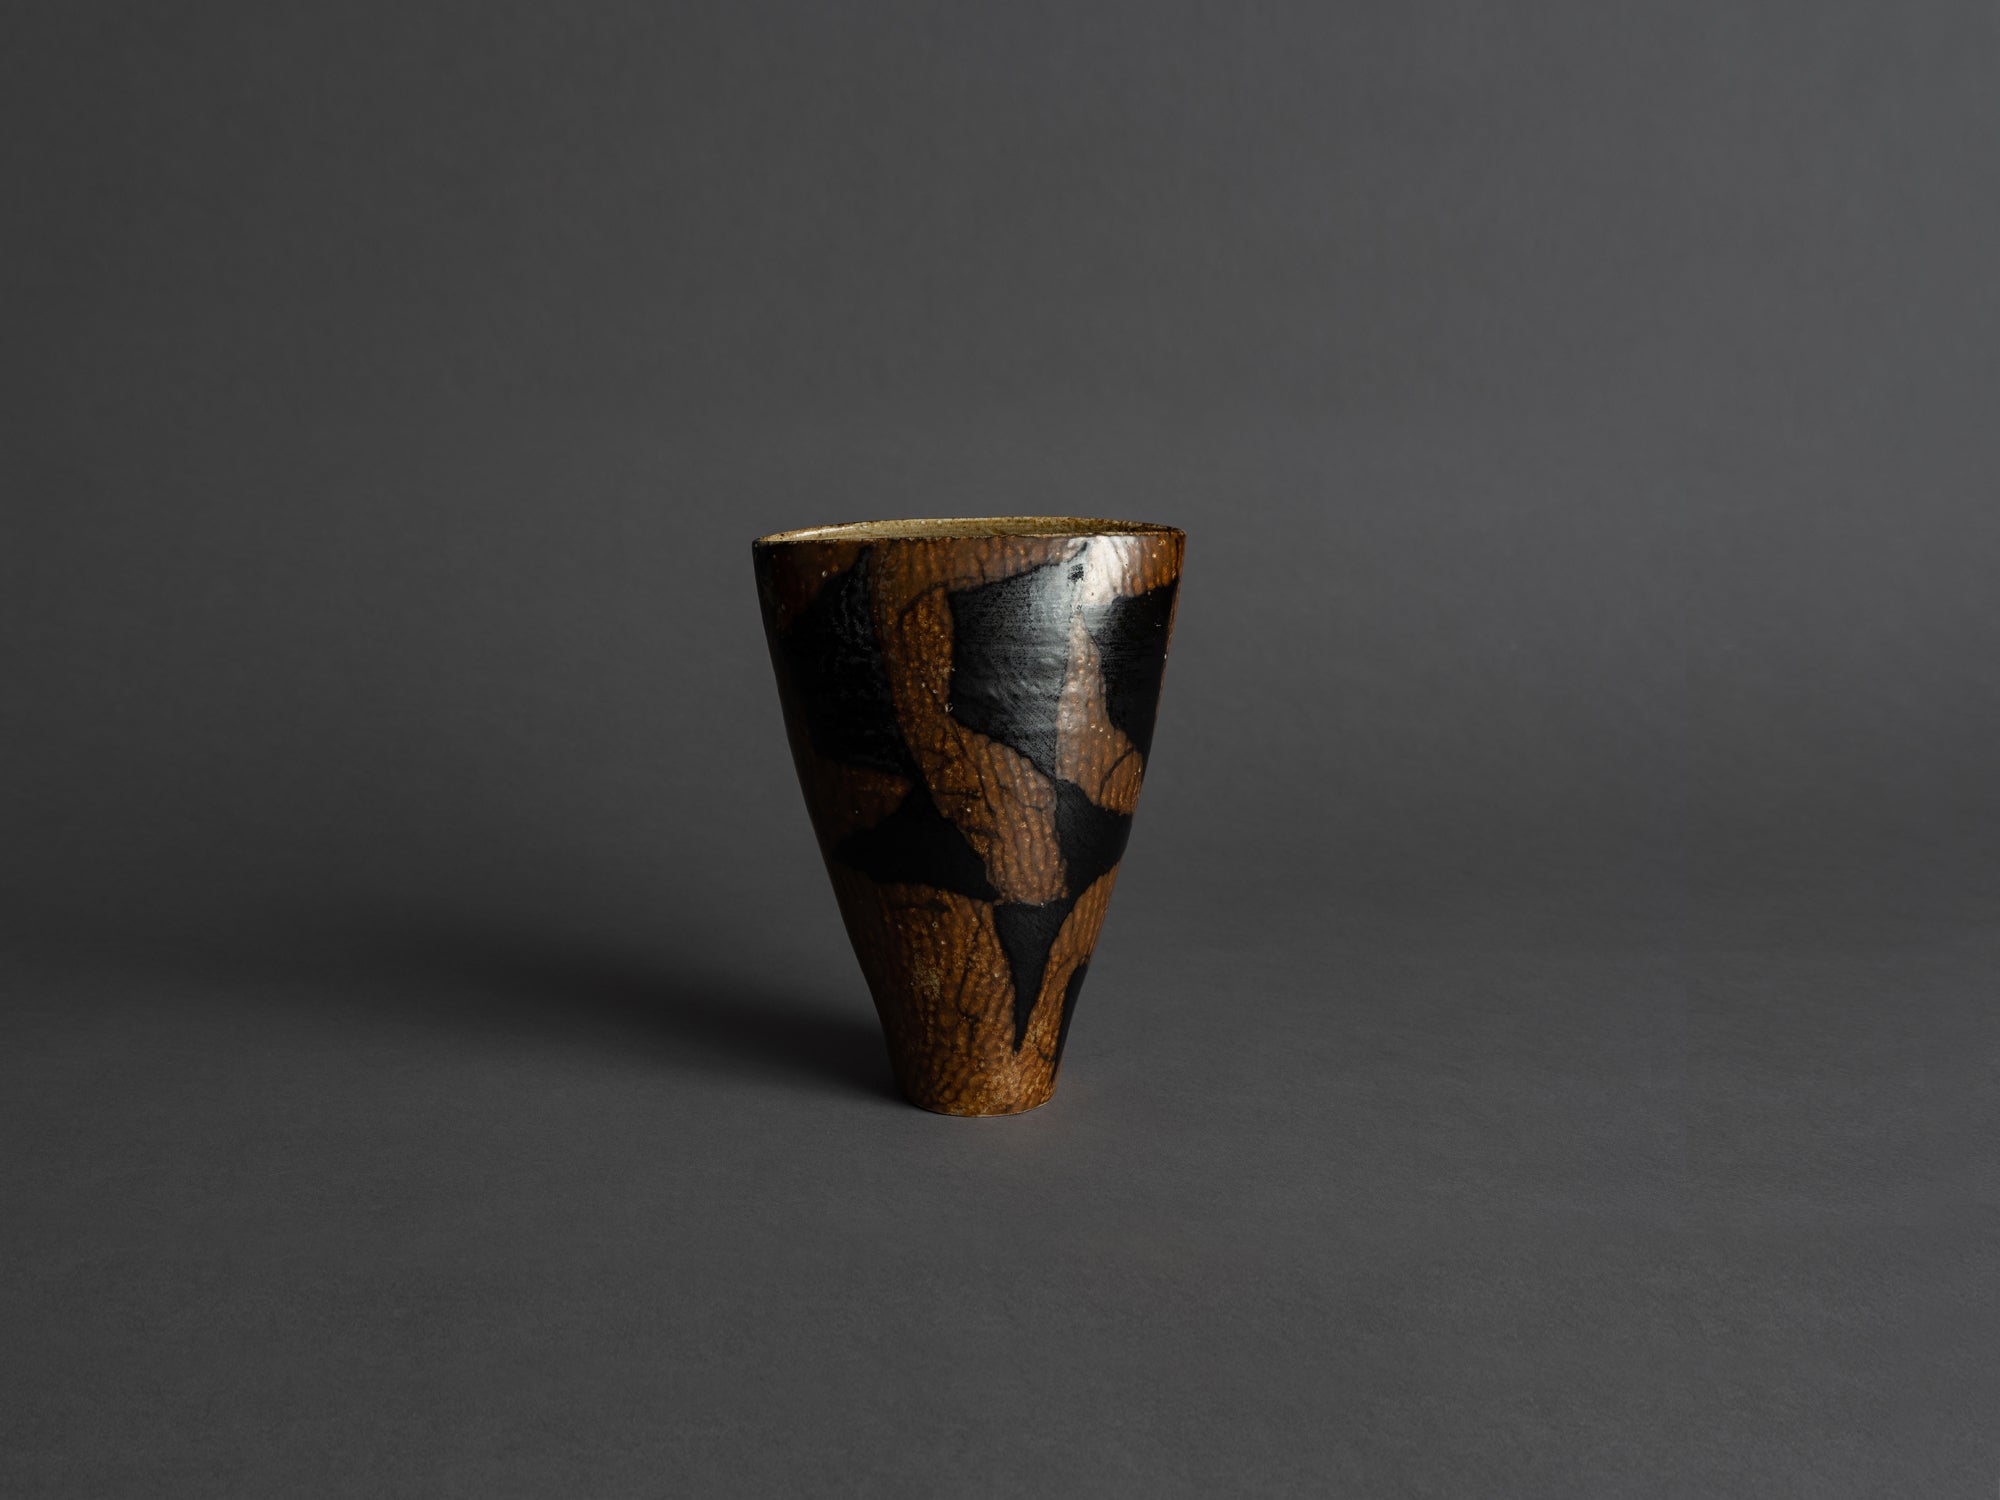 Vase en porcelaine par Anne & Peter Stougaard, Bornholm, Danemark (vers 1965)..Free form vase by Anne & Peter Stougaard, Bornholm, Denmark (circa 1965)